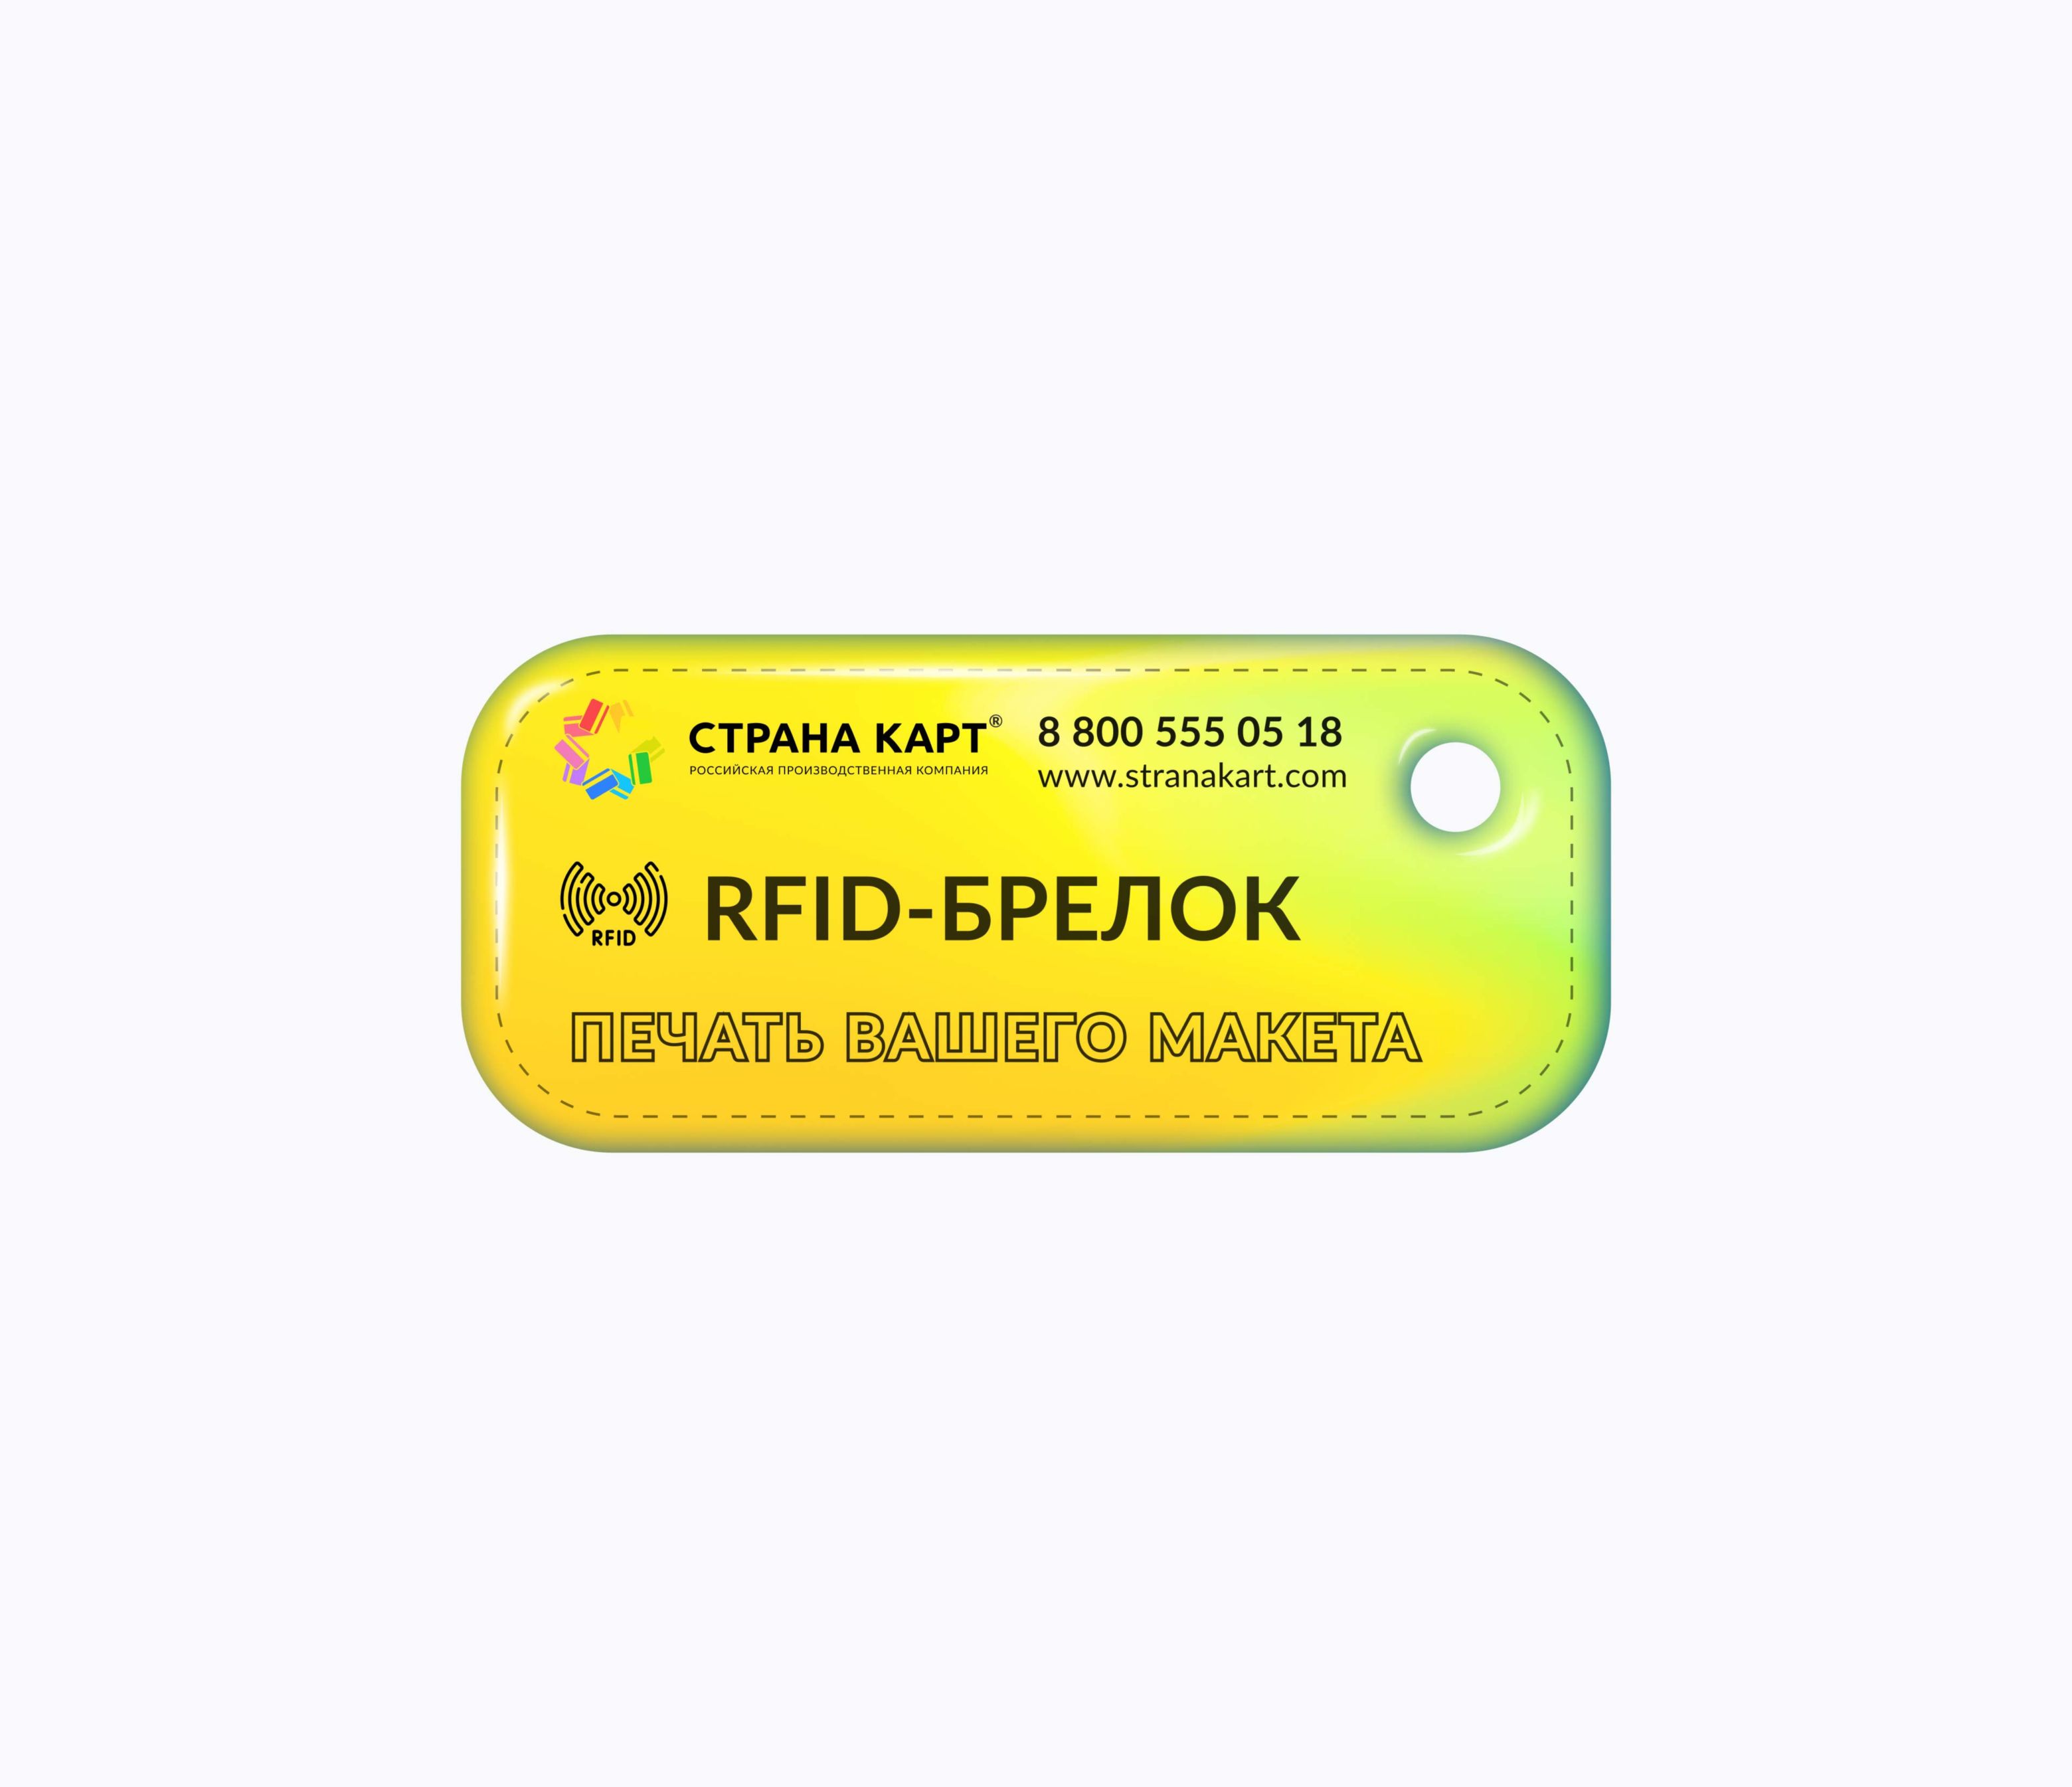 Прямоугольные Мини RFID-брелоки NEOKEY® с чипом для букмекерских клубов RFID-брелоки NEOKEY® с чипом для букмекерских клубов